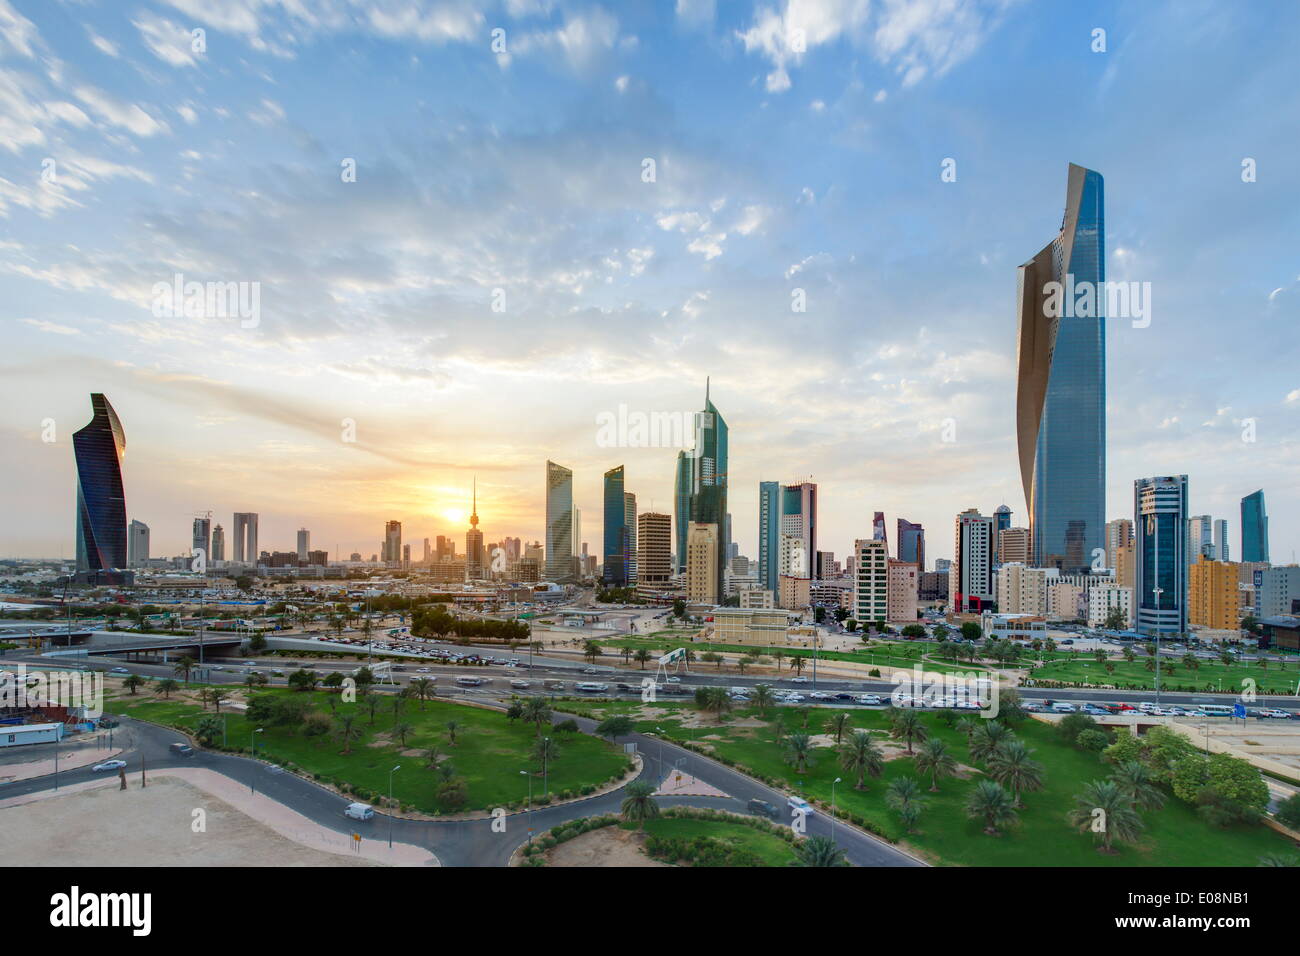 Portrait de la ville moderne et central Business district, la ville de Koweït, Koweït, Moyen-Orient Banque D'Images